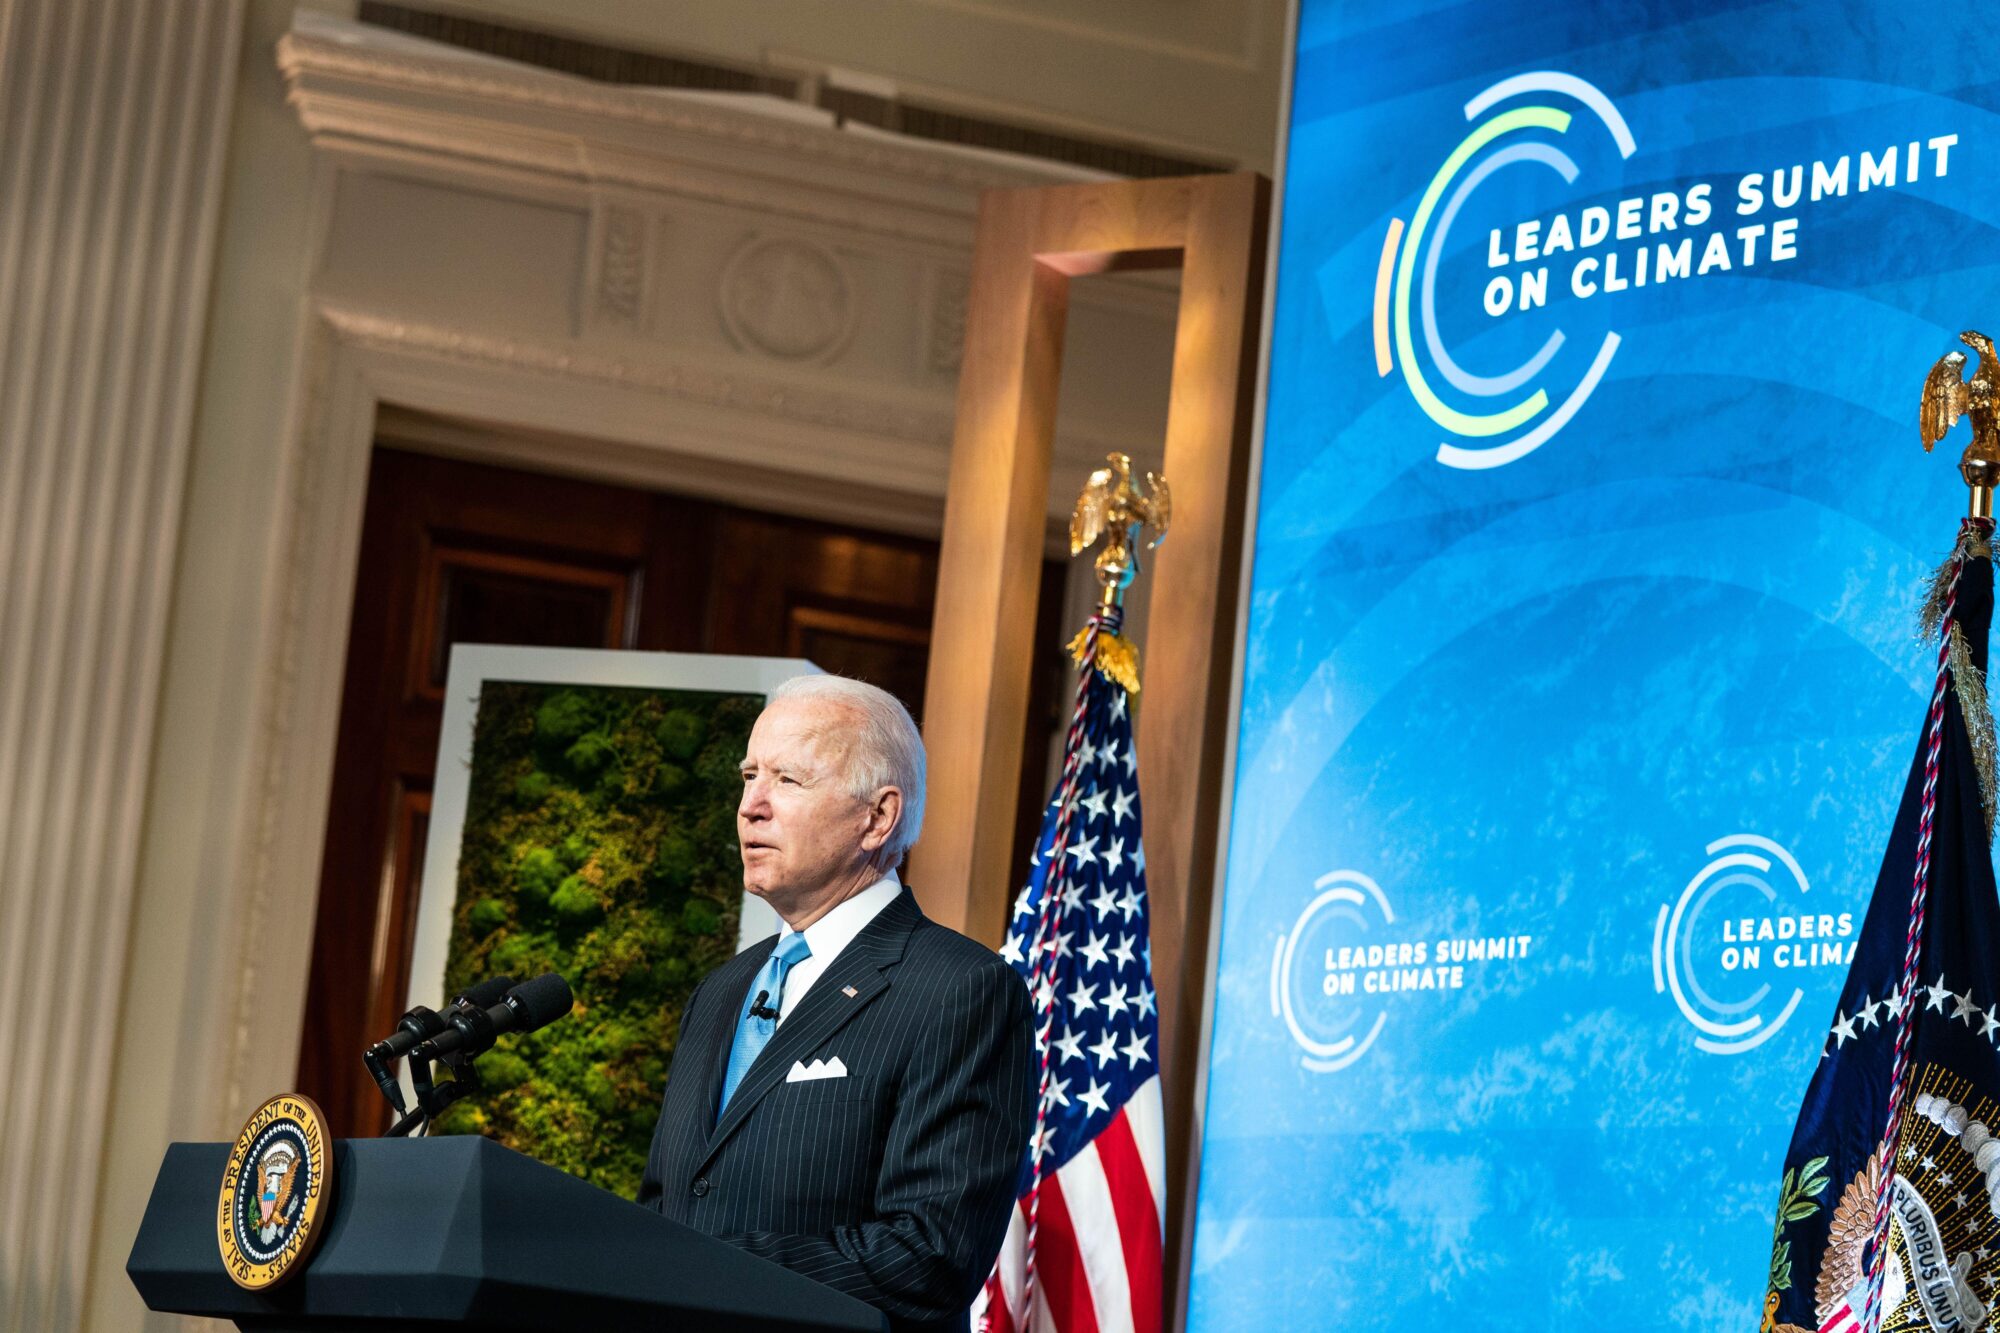 Joe Biden speaks at the Climate Summit